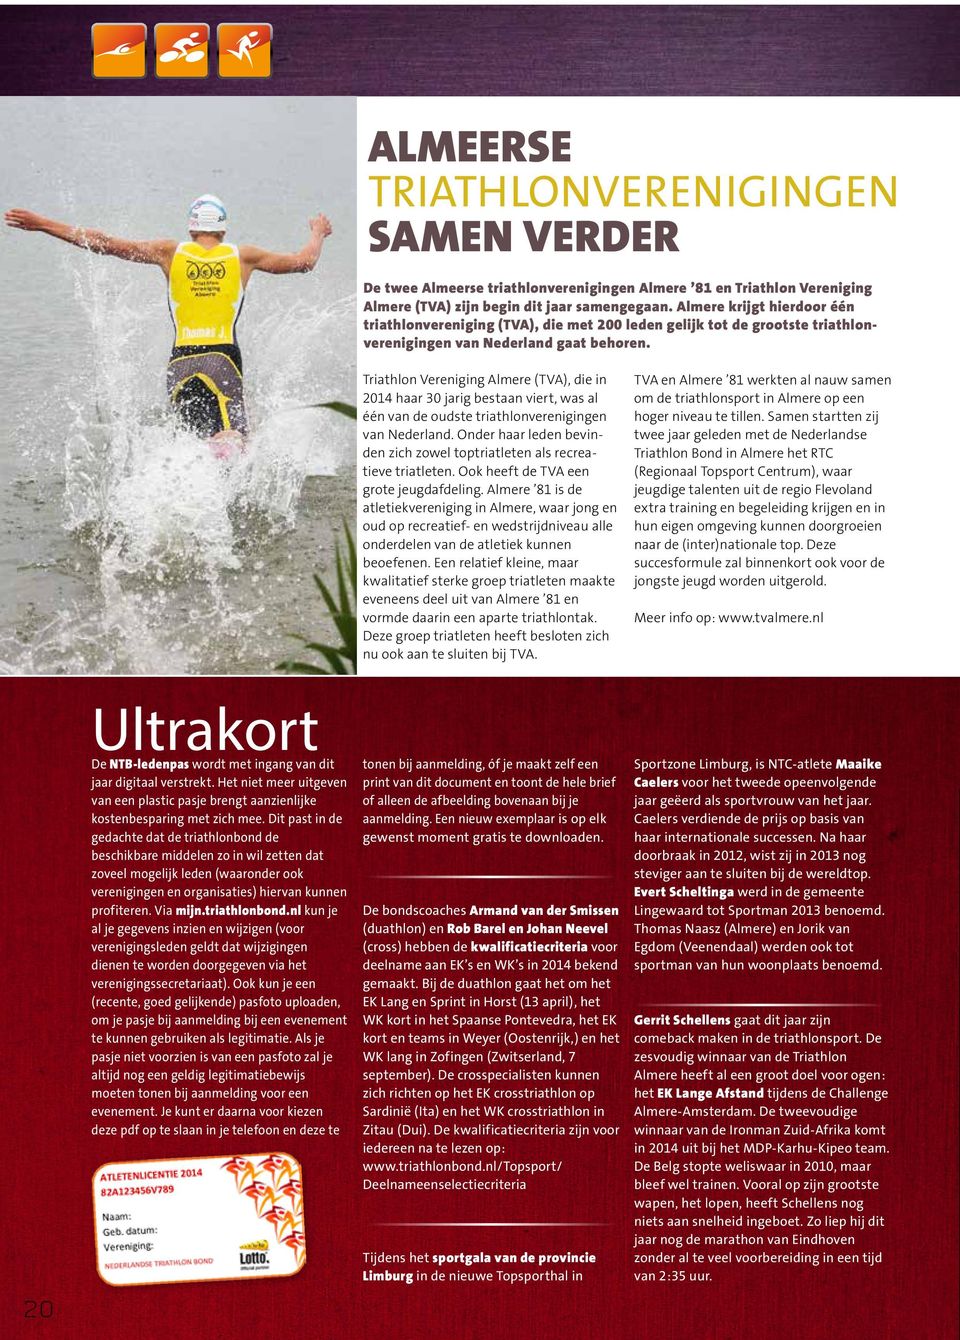 Triathlon Vereniging Almere (TVA), die in haar 30 jarig bestaan viert, was al één van de oudste triathlonverenigingen van Nederland.